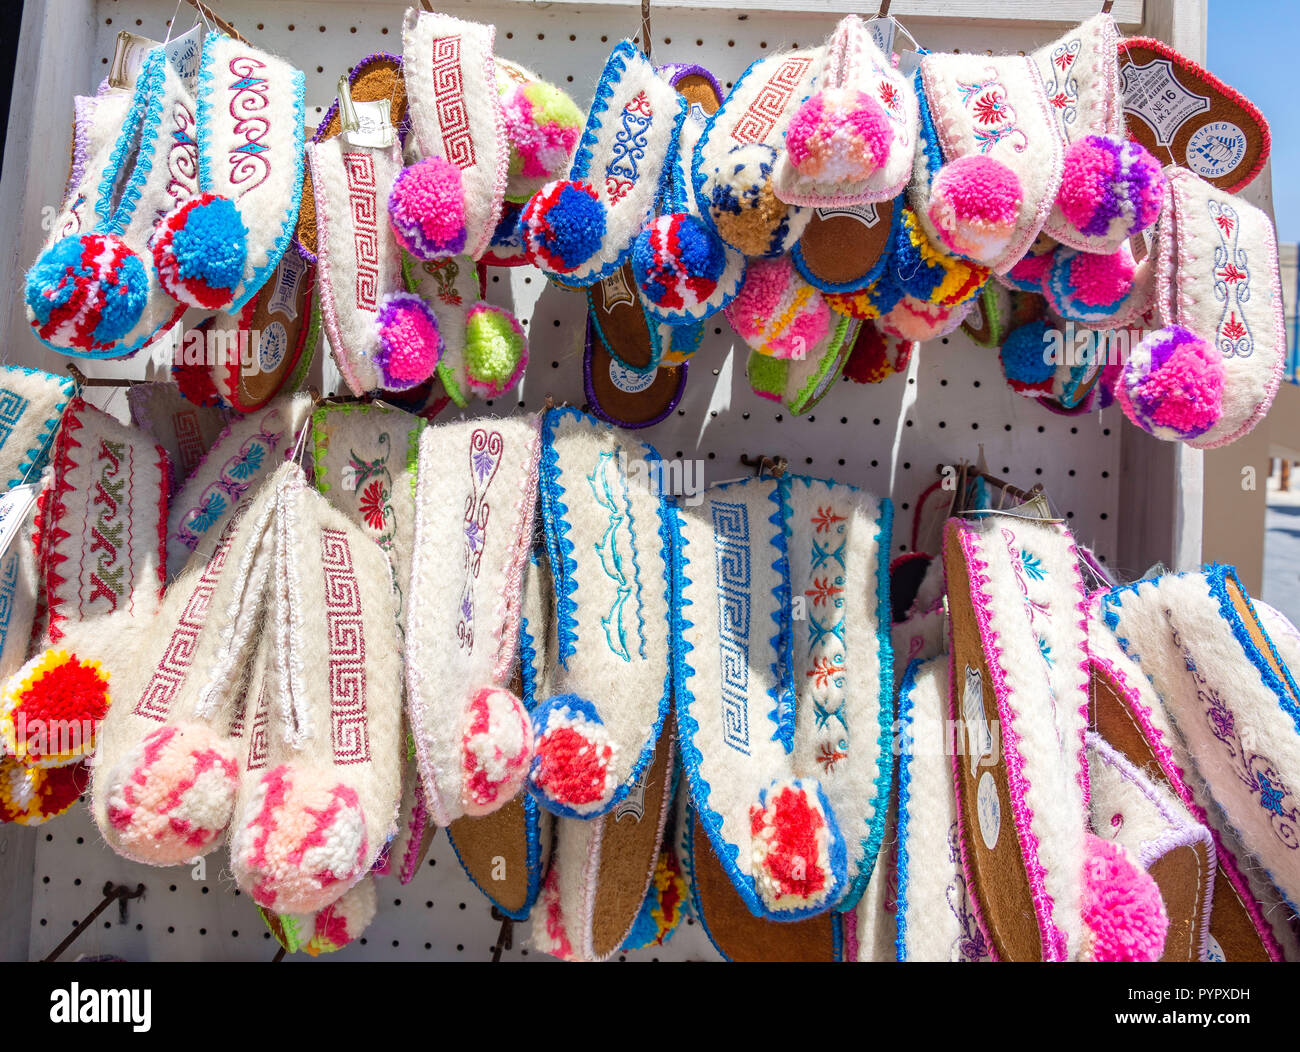 Griechische traditionelle wolle Hausschuhe für Verkauf, avgoustou 17 Street, Heraklion (irakleio), Irakleio Region, Kreta (Kriti), Griechenland Stockfoto